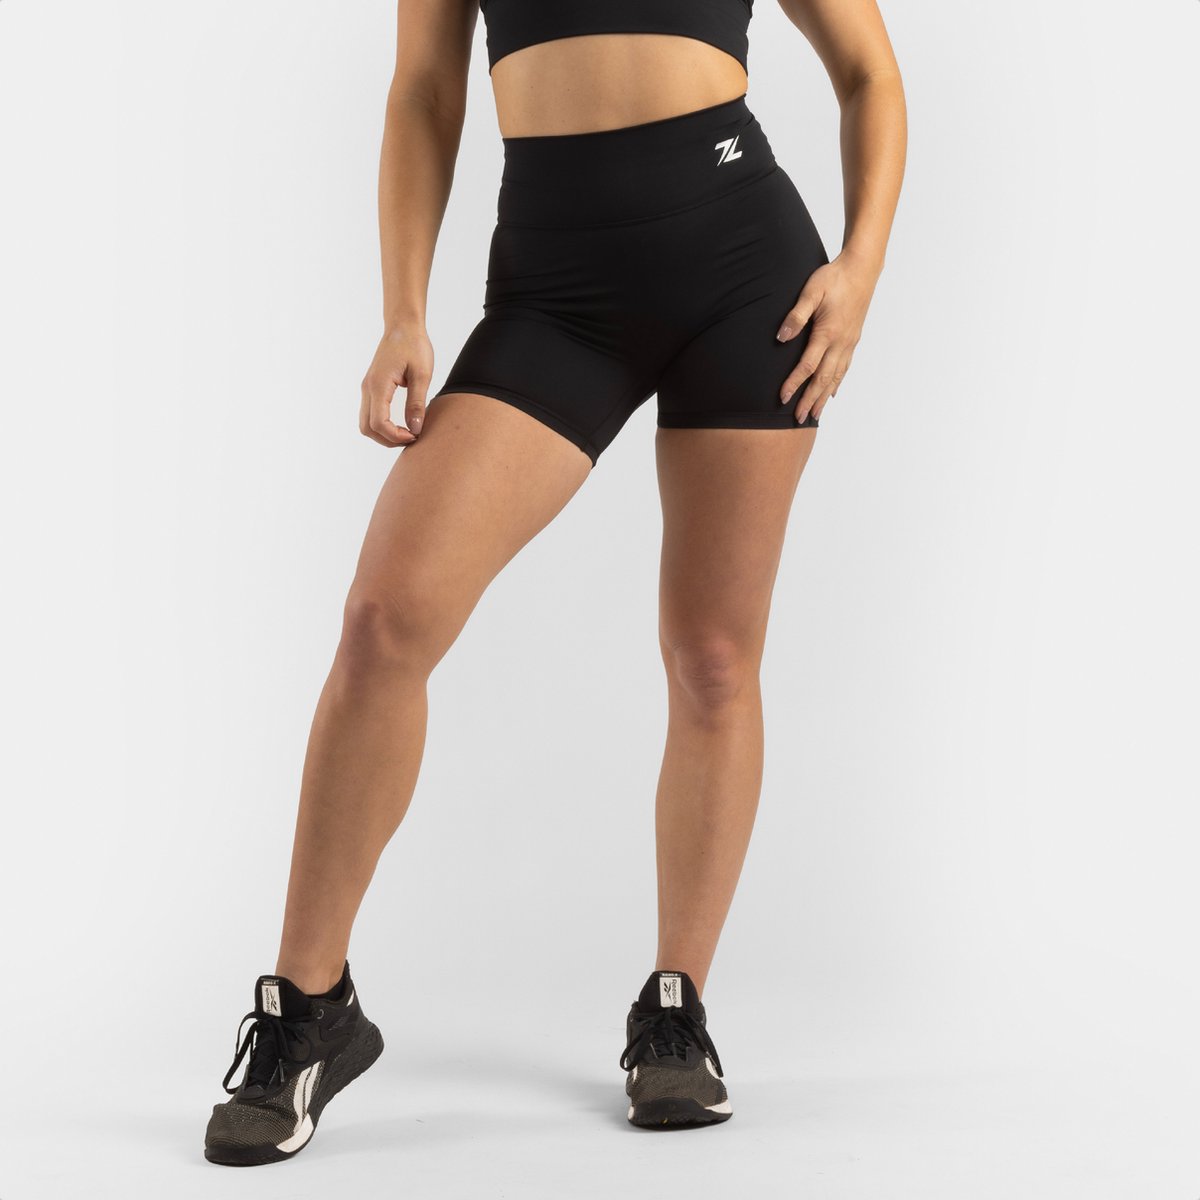 ZEUZ Korte Sport Legging Dames High Waist - Sportkleding & Sportlegging Squat Proof - Fitness & Crossfit - Hardloopbroek, Yoga Broek - 70% Nylon & 30% Elastaan - Zwart - Maat XS